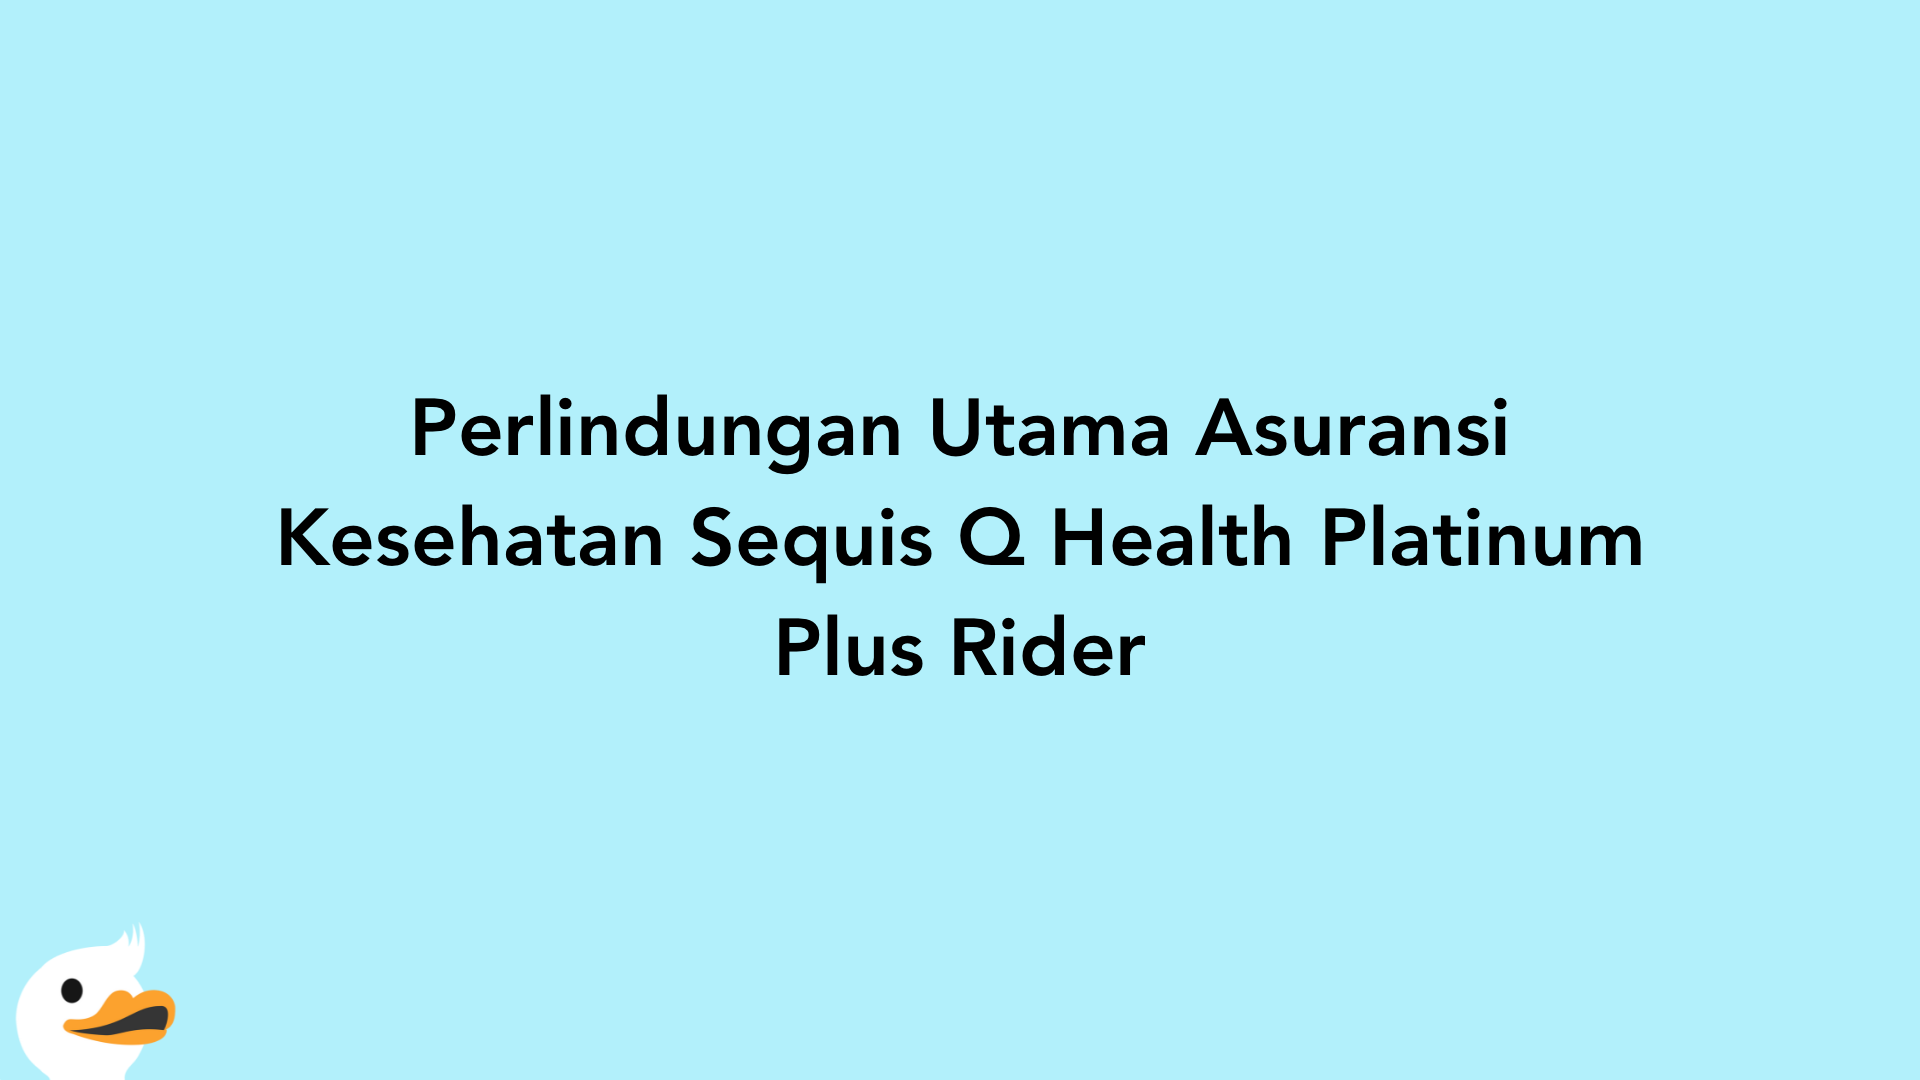 Perlindungan Utama Asuransi Kesehatan Sequis Q Health Platinum Plus Rider